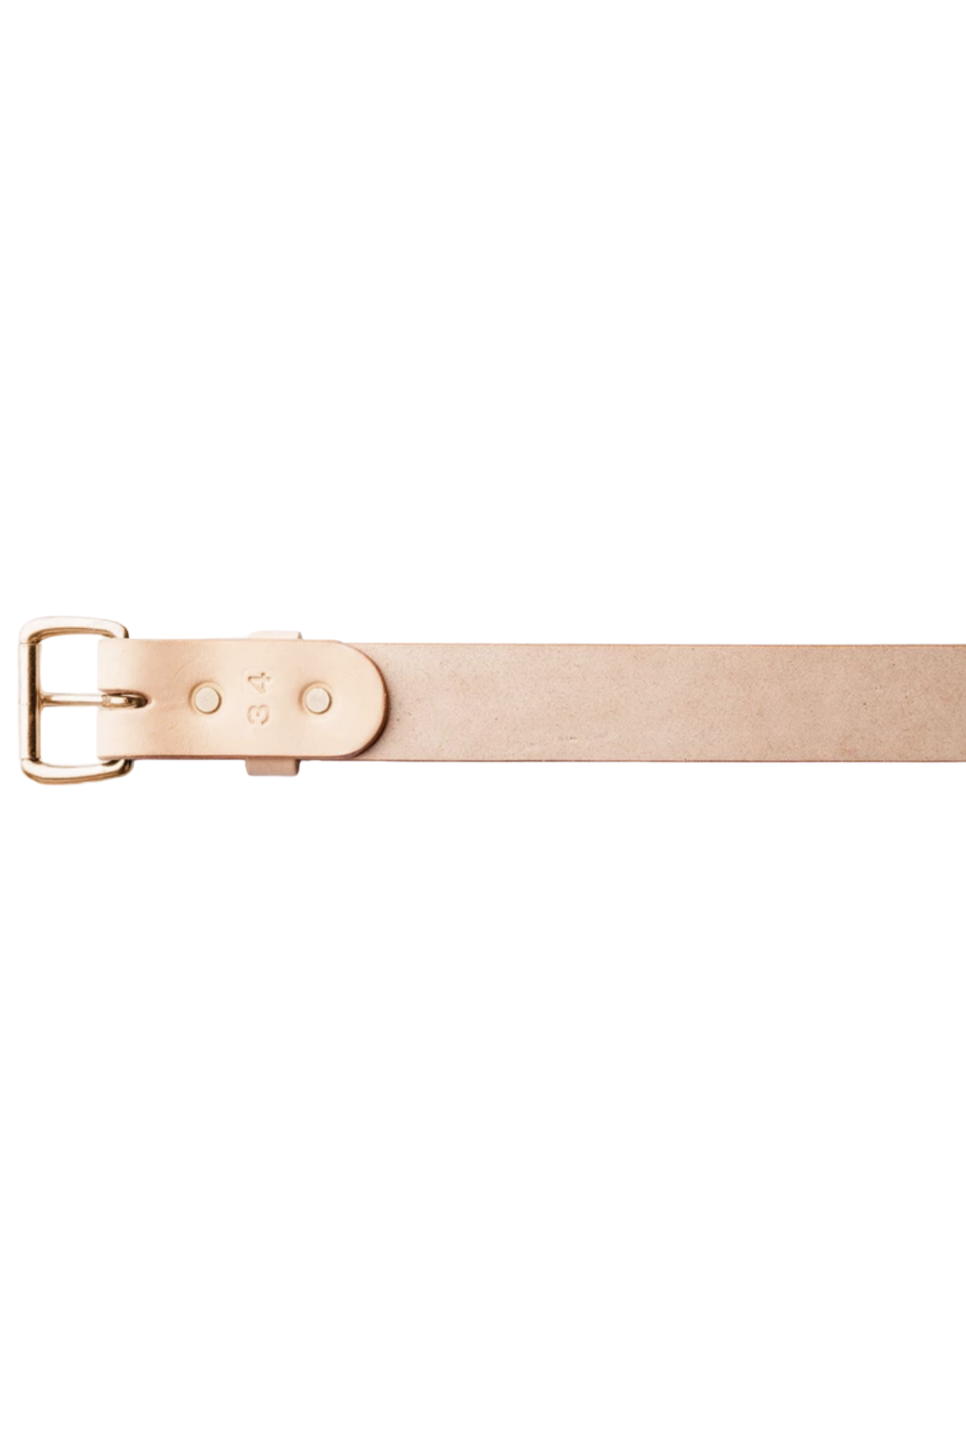 Tanner Goods - Standard Belt - Natural/Copper